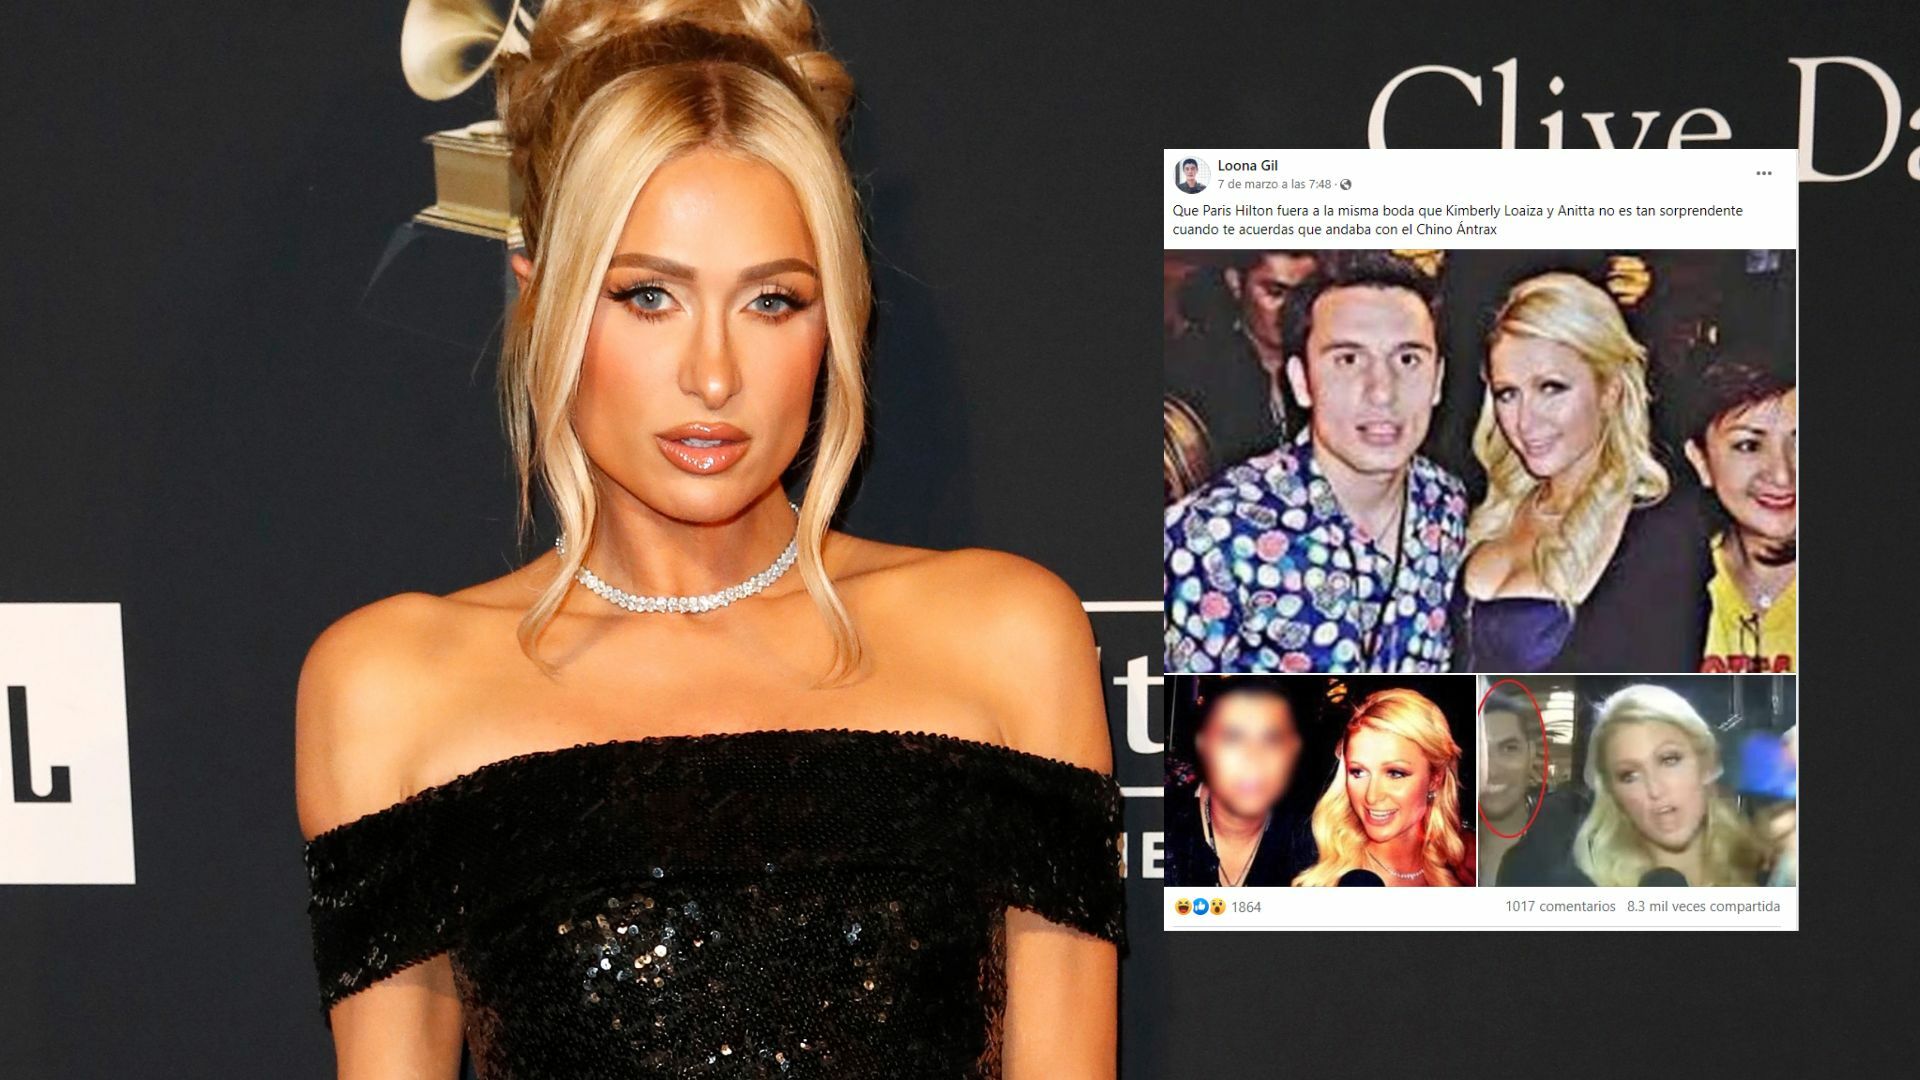 Fotos de Paris Hilton con 'El Chino Ántrax' se hacen virales en redes sociales 